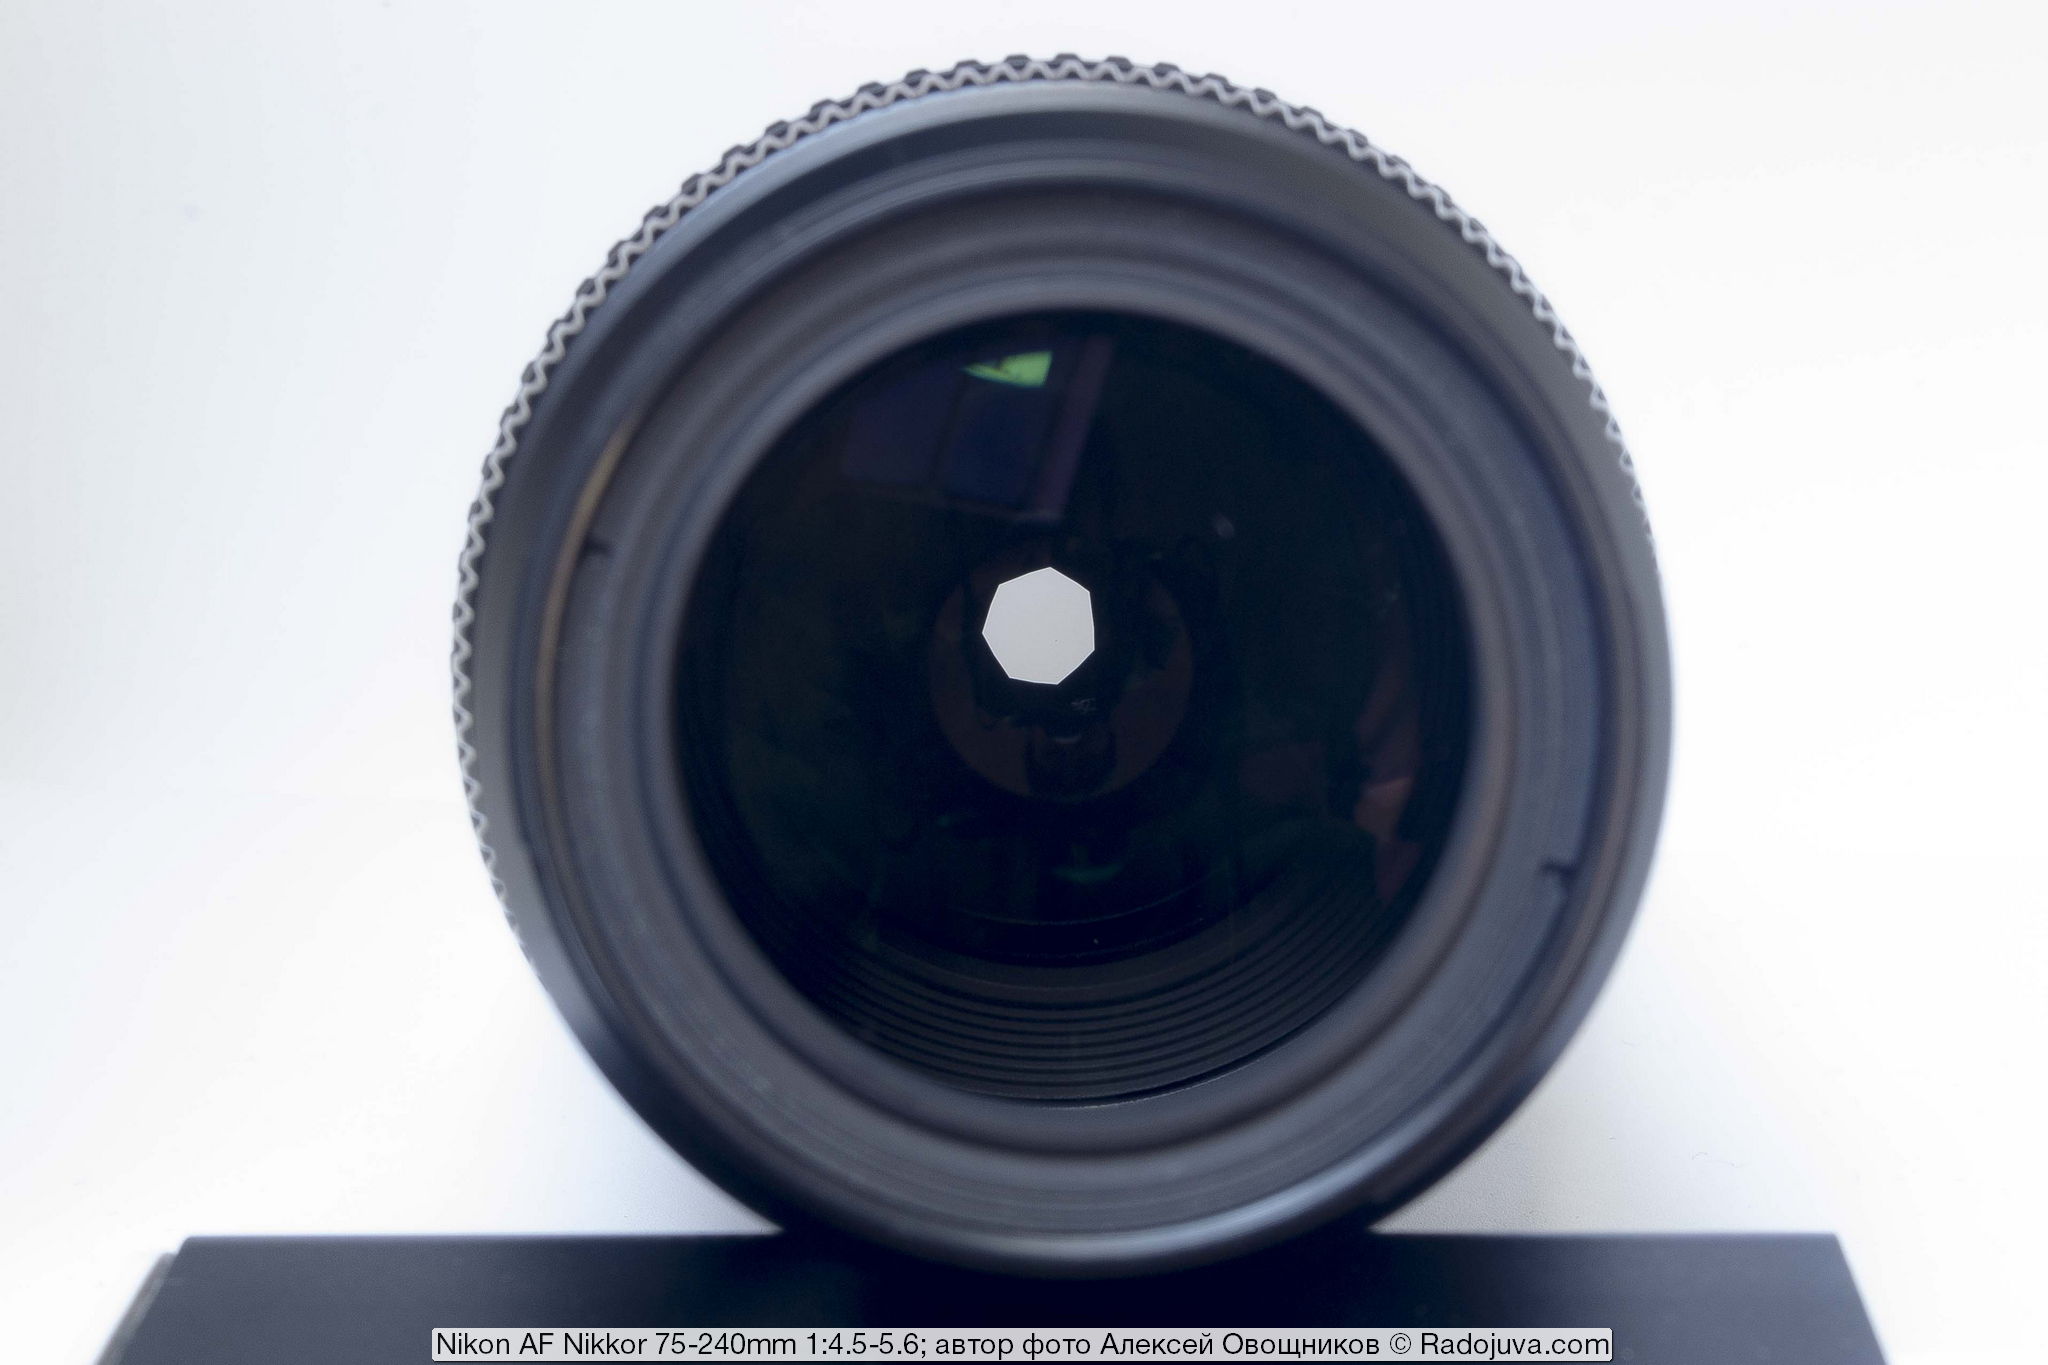 Nikon AF Nikkor 75-240mm 1: 4.5-5.6